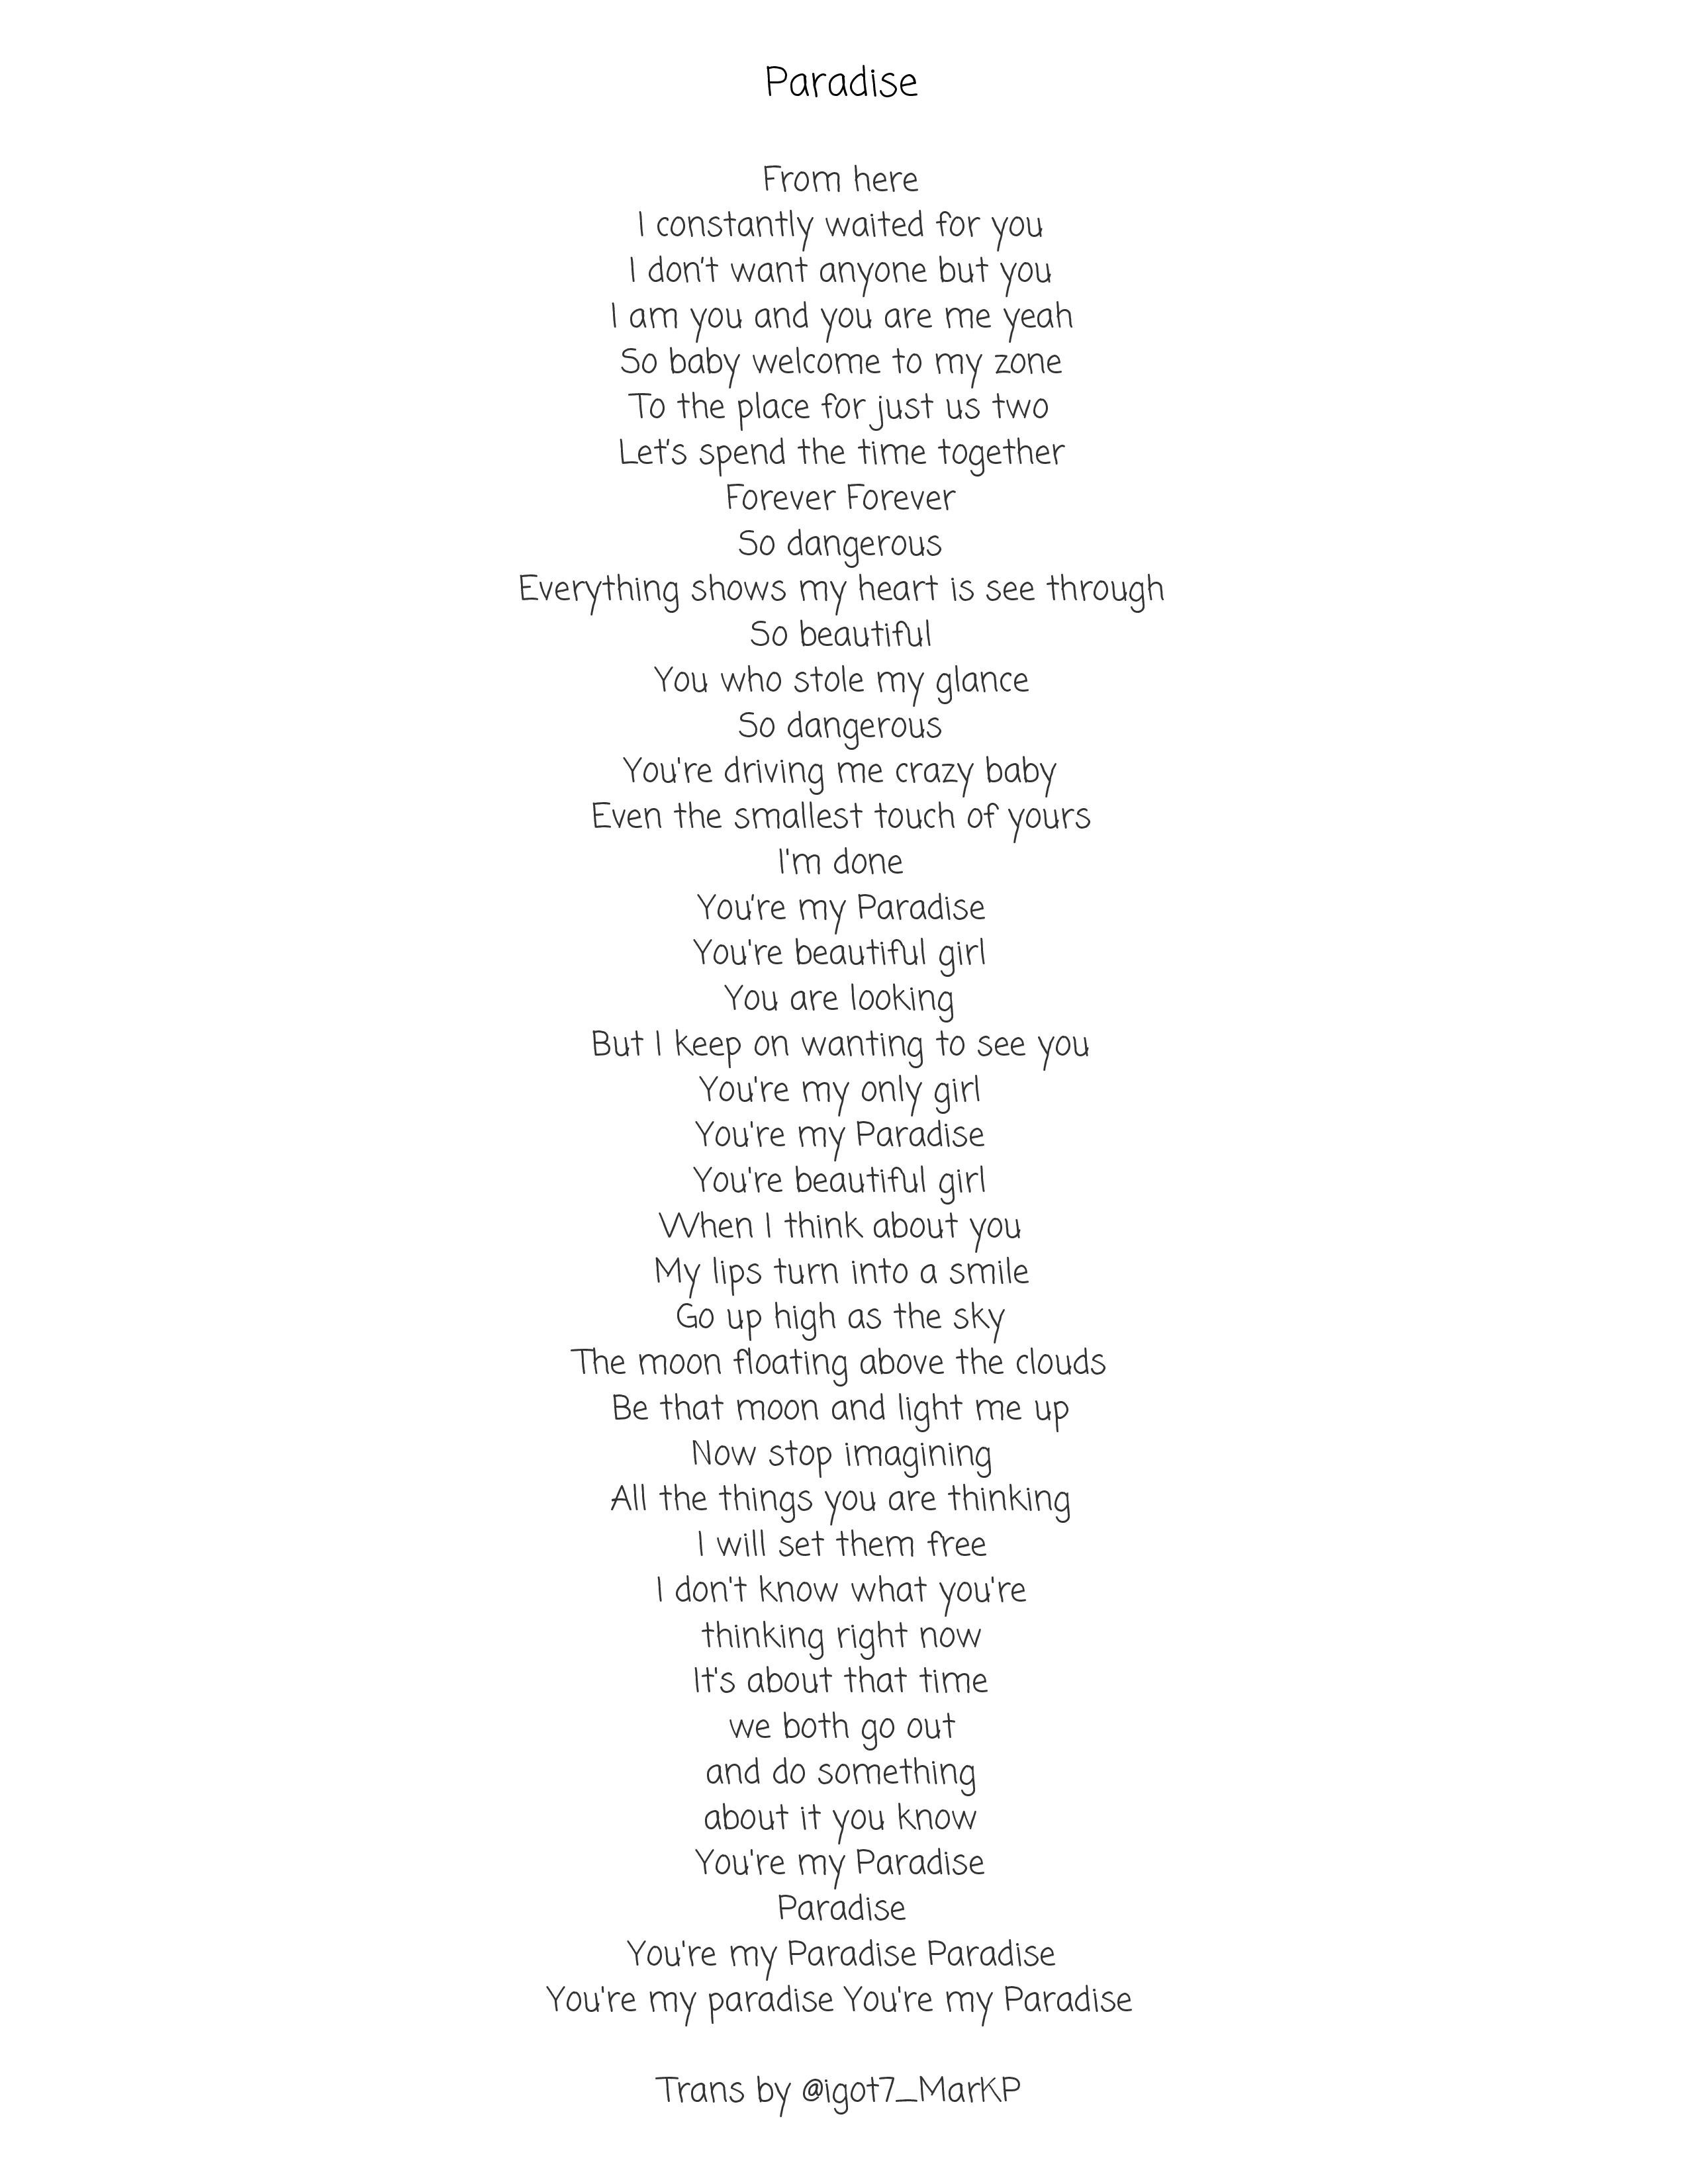 맠'sBabybrd Krystal on X: ENG TRANS for Paradise lyrics #NeverEver #GOT7  #igot7markptrans  / X